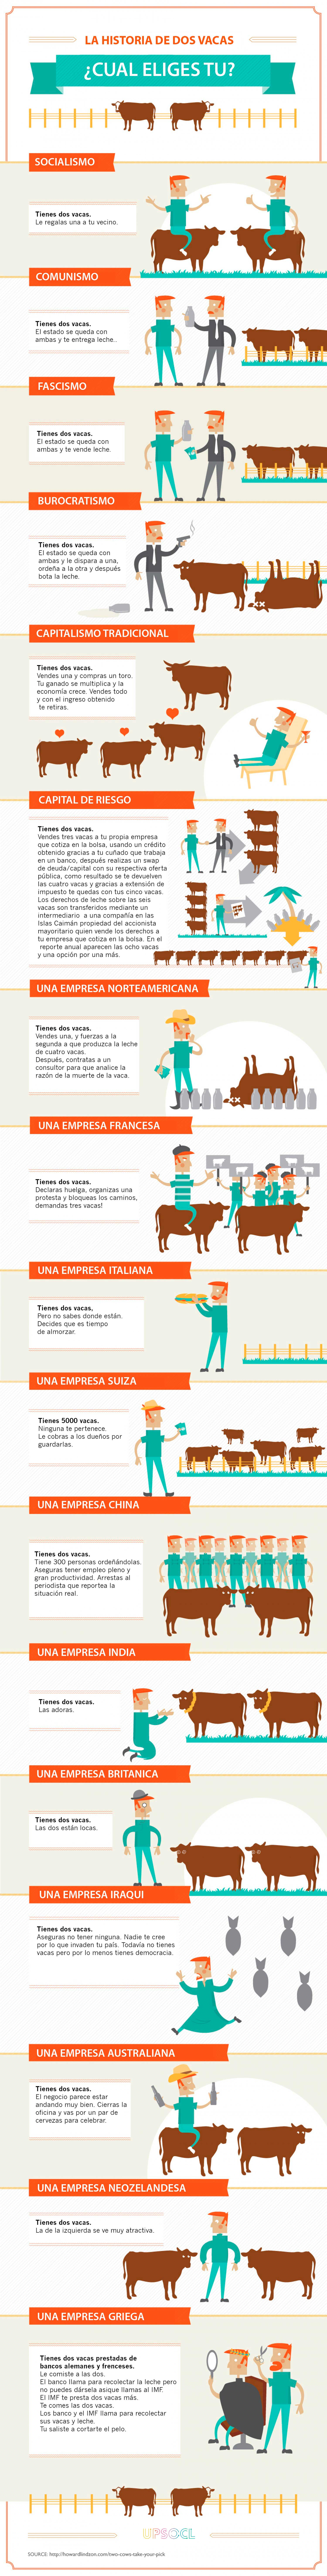 Entiende con vacas al mundo (economía)